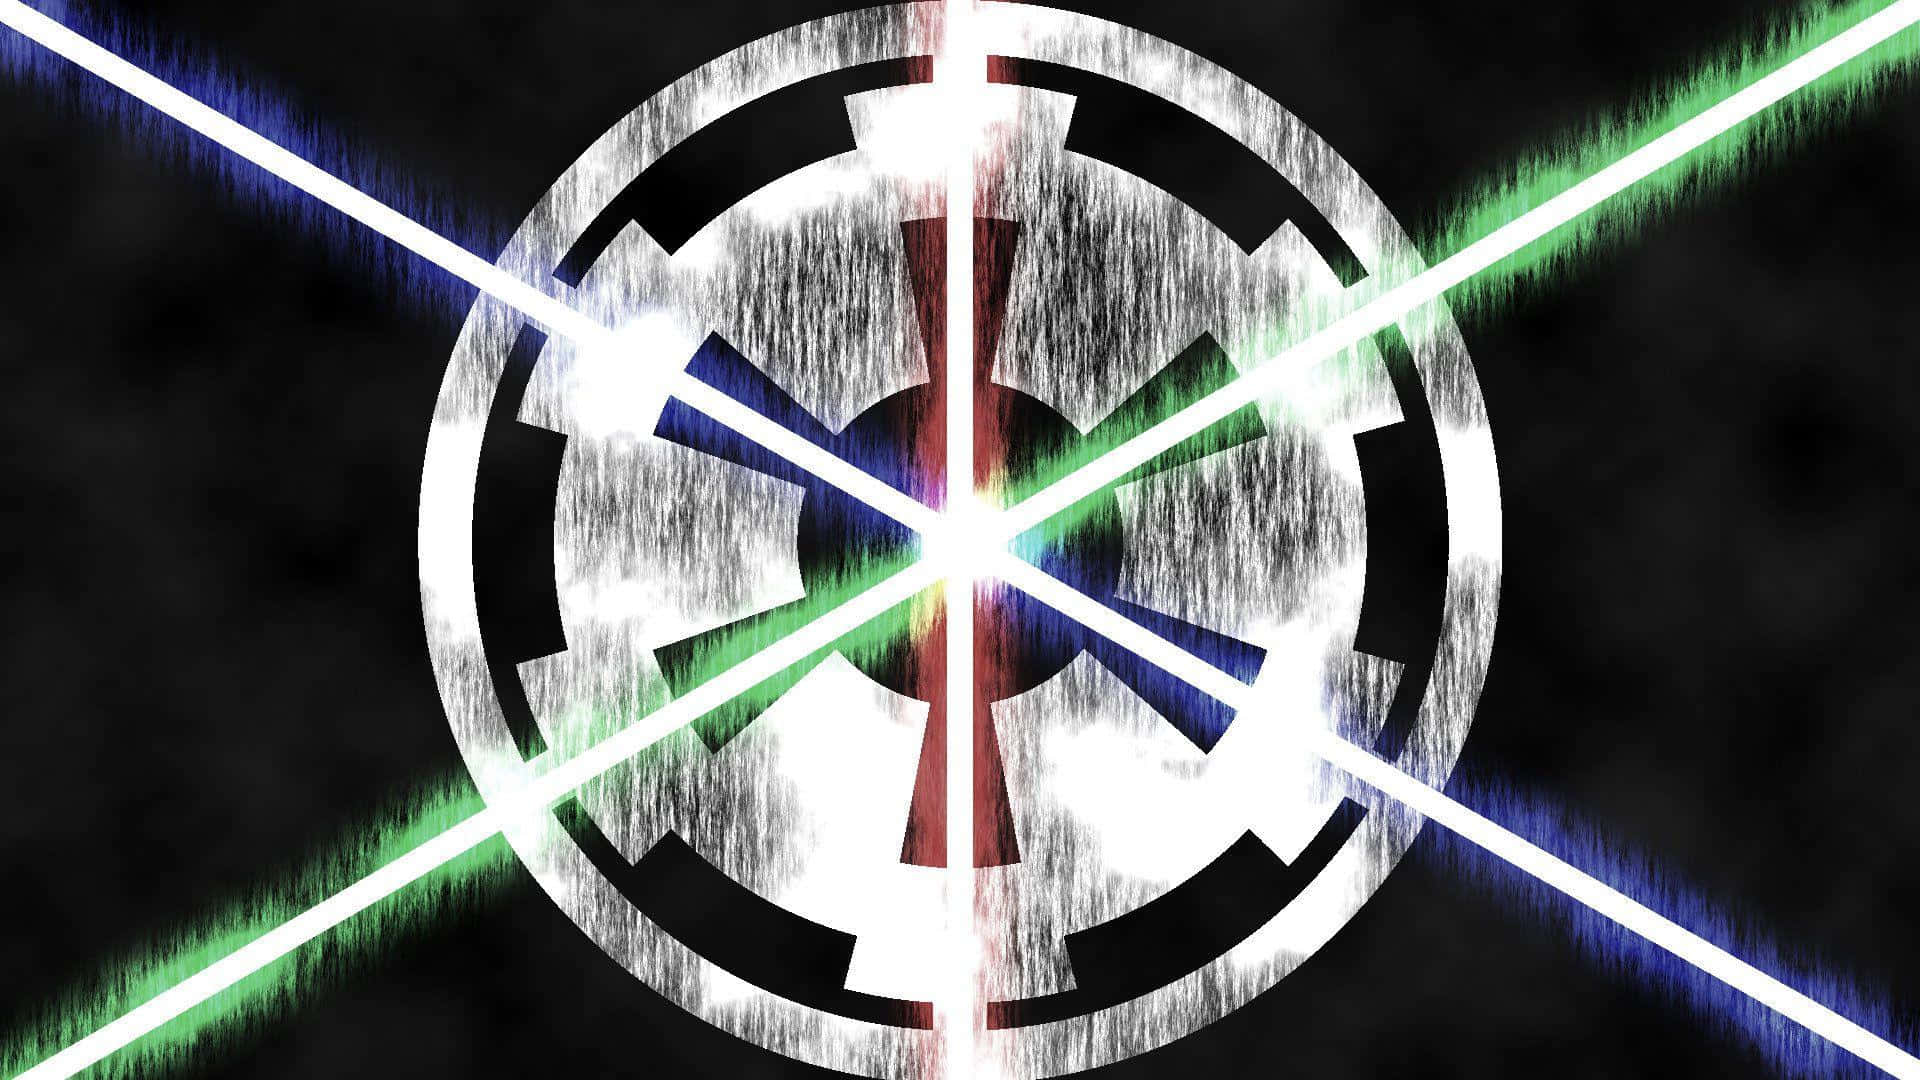 Dasikonische Star Wars Imperium-logo Wallpaper